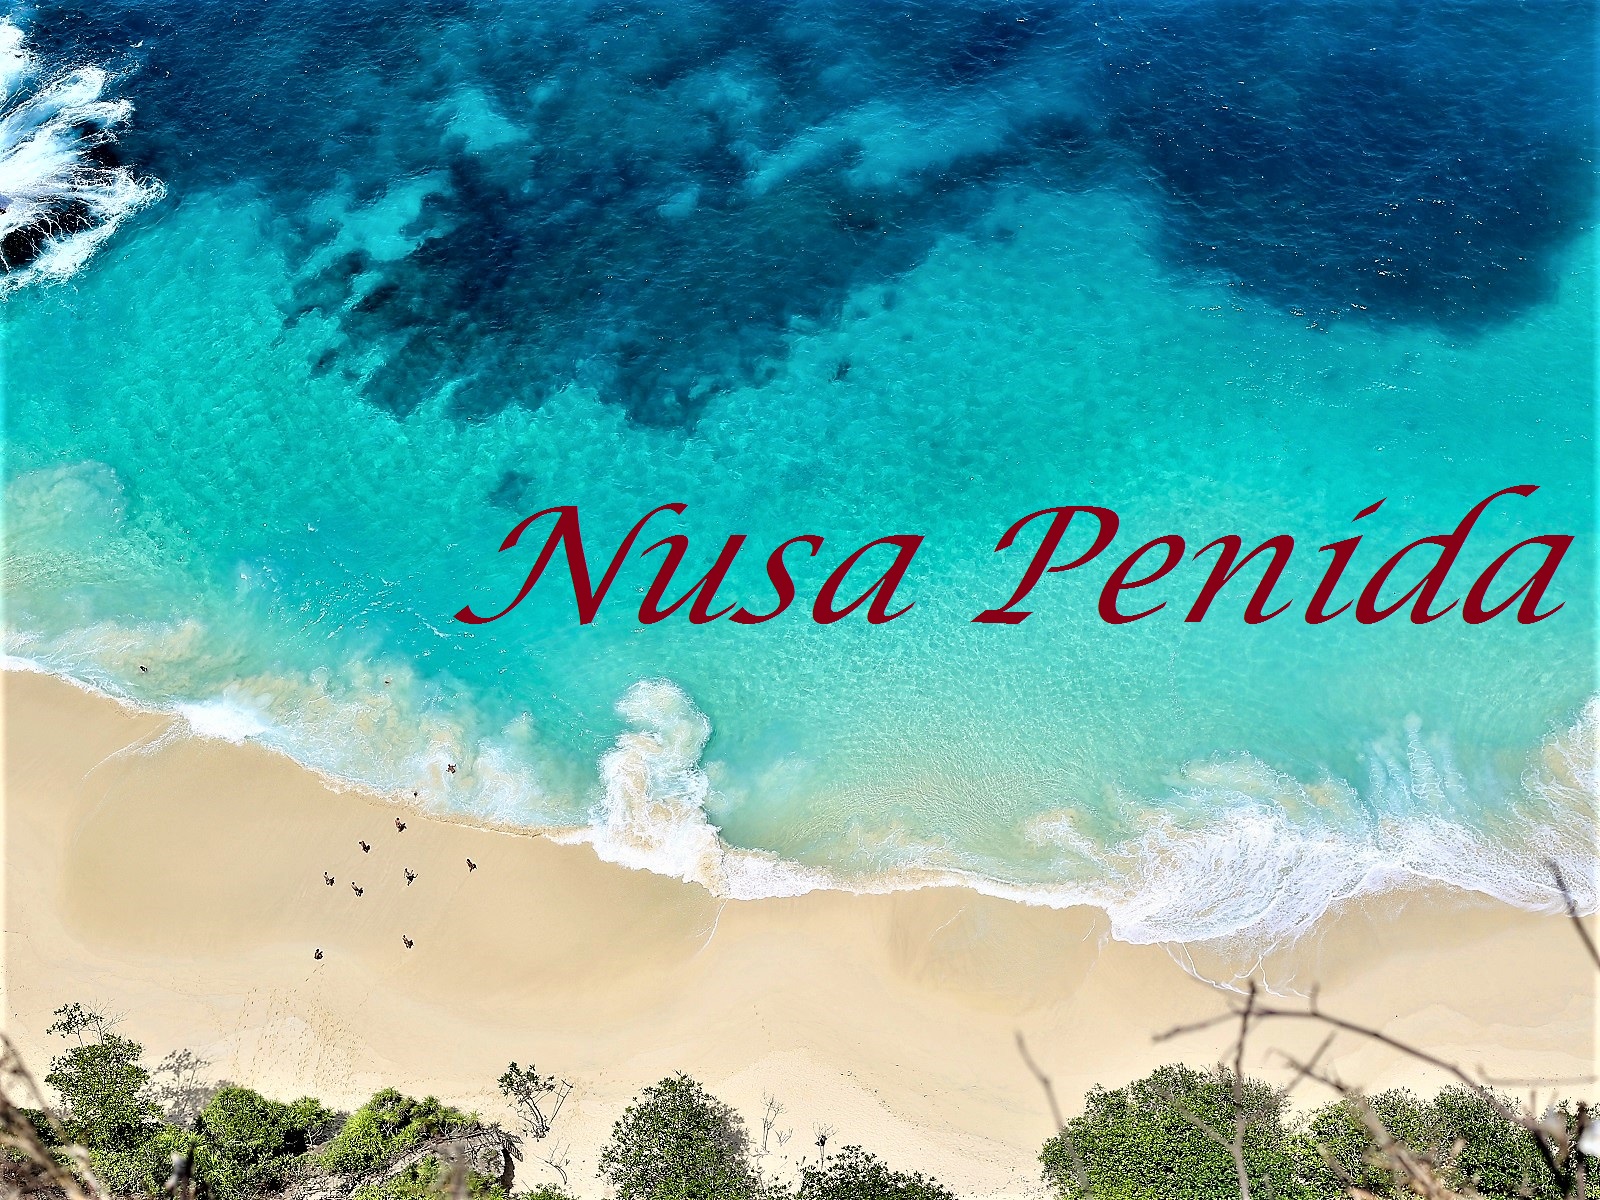 ペニダ島、クリンキンビーチ、ブロークンビーチ、エンジェルビラボンの紹介